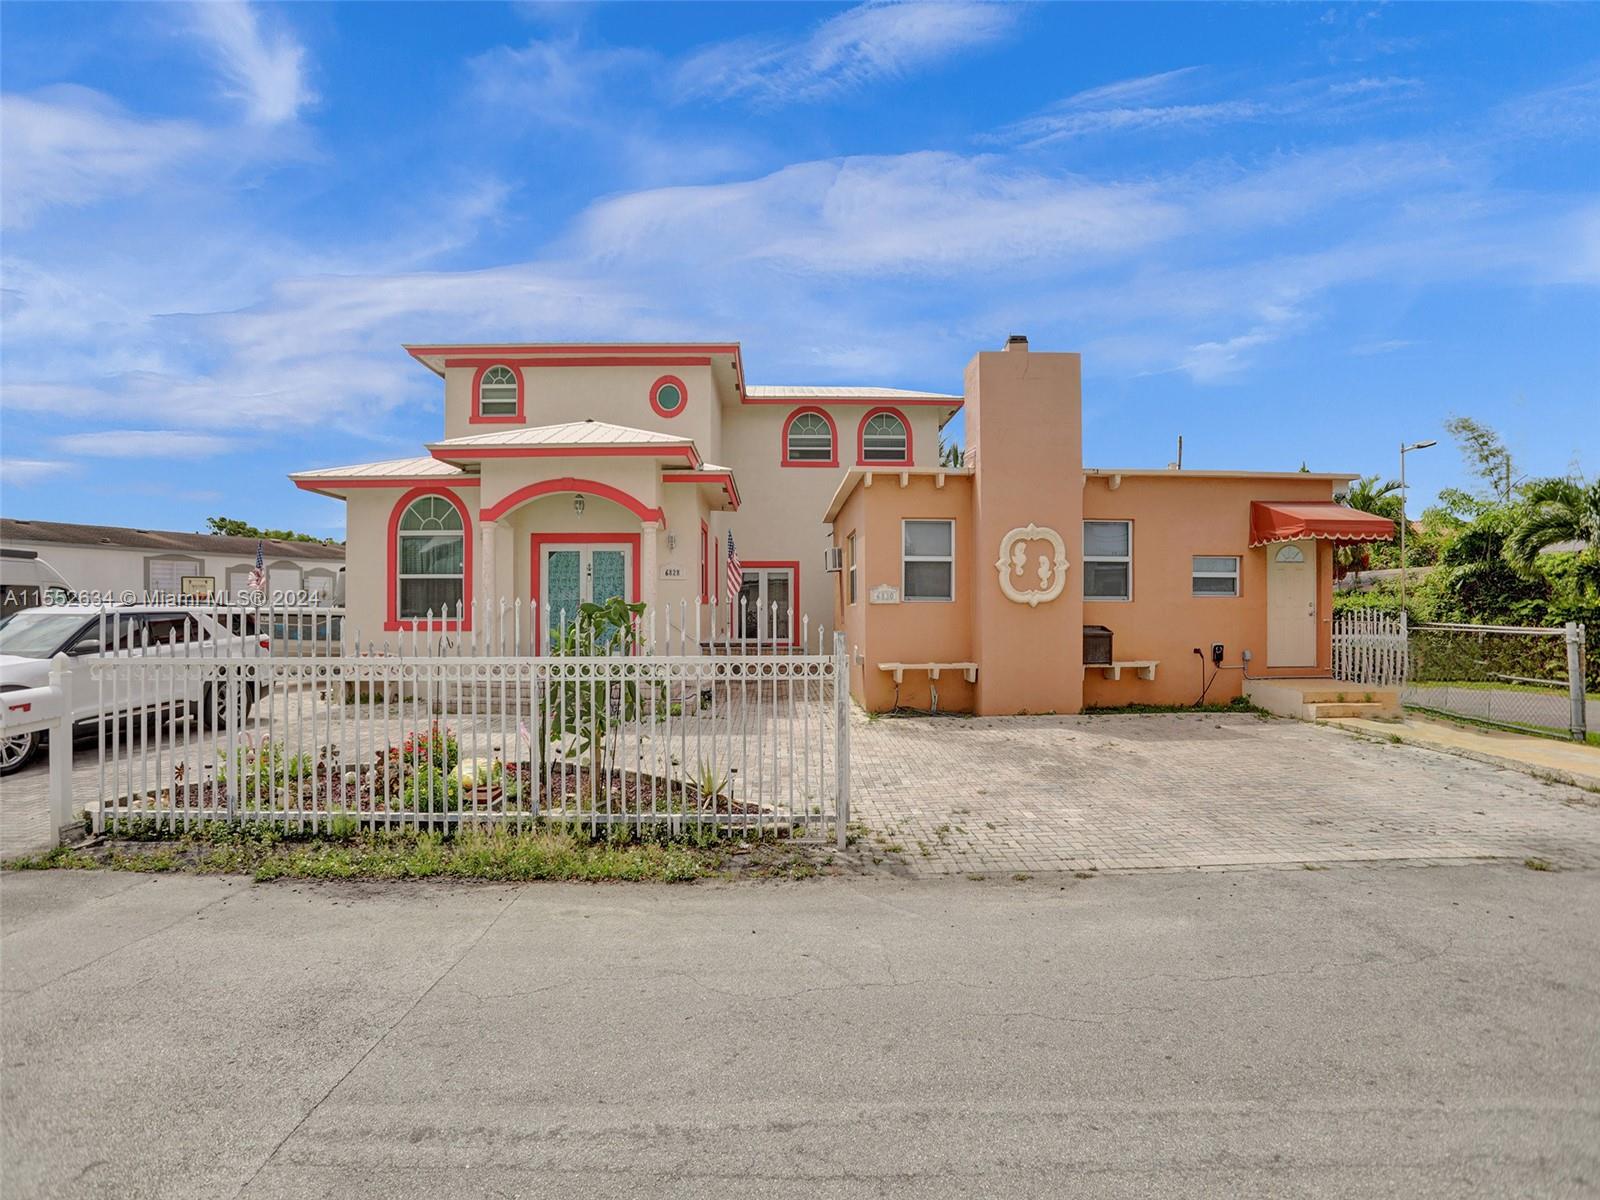 Rental Property at 6828 Nw 76th St, Medley, Miami-Dade County, Florida -  - $949,000 MO.